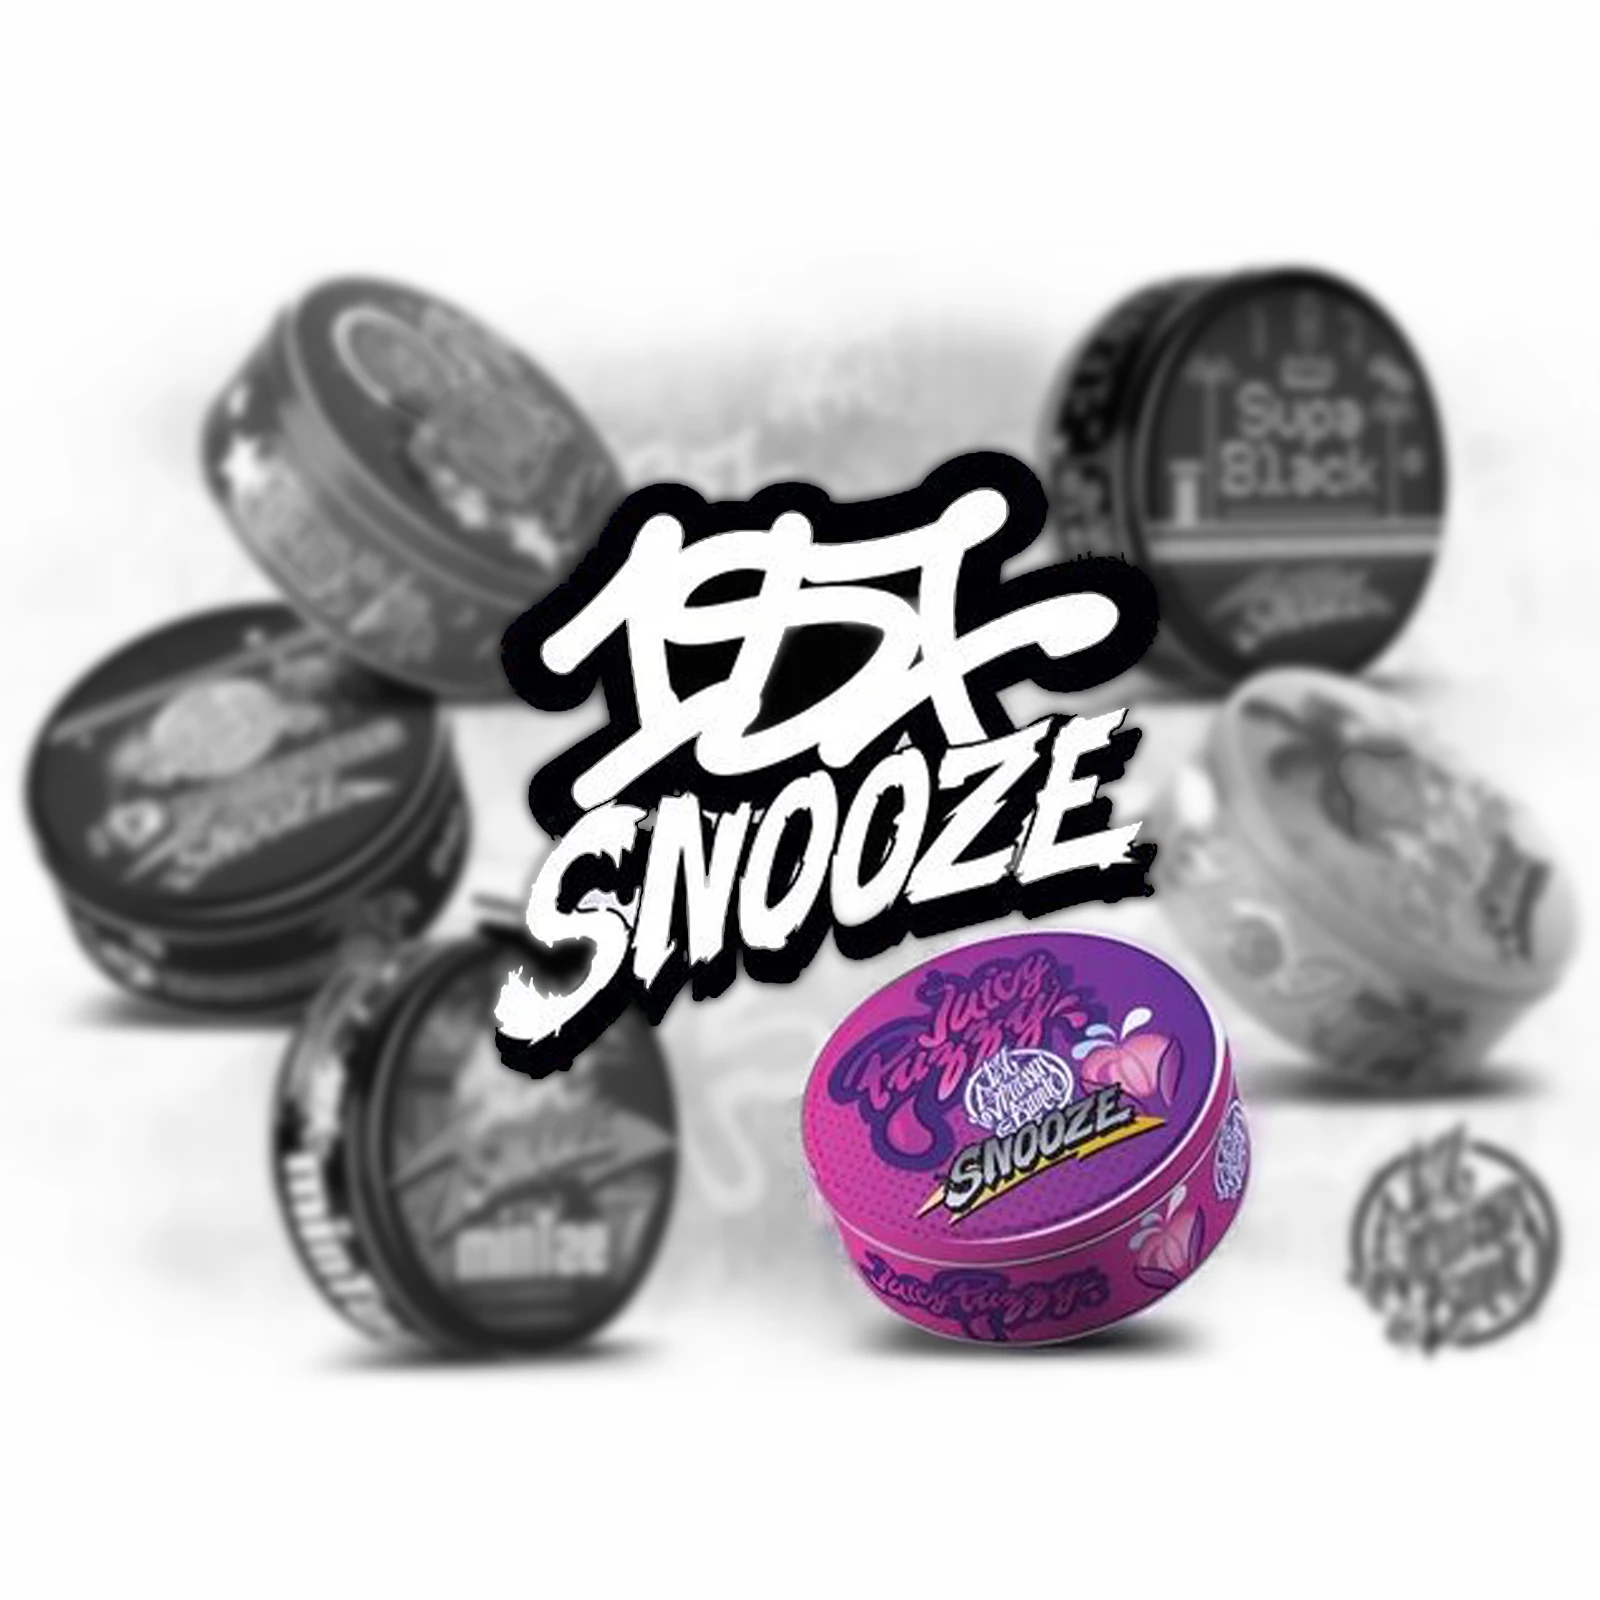 187 Snooze Nicopods Juicy Puzzy | tabakfreie Nikotinbeutel 